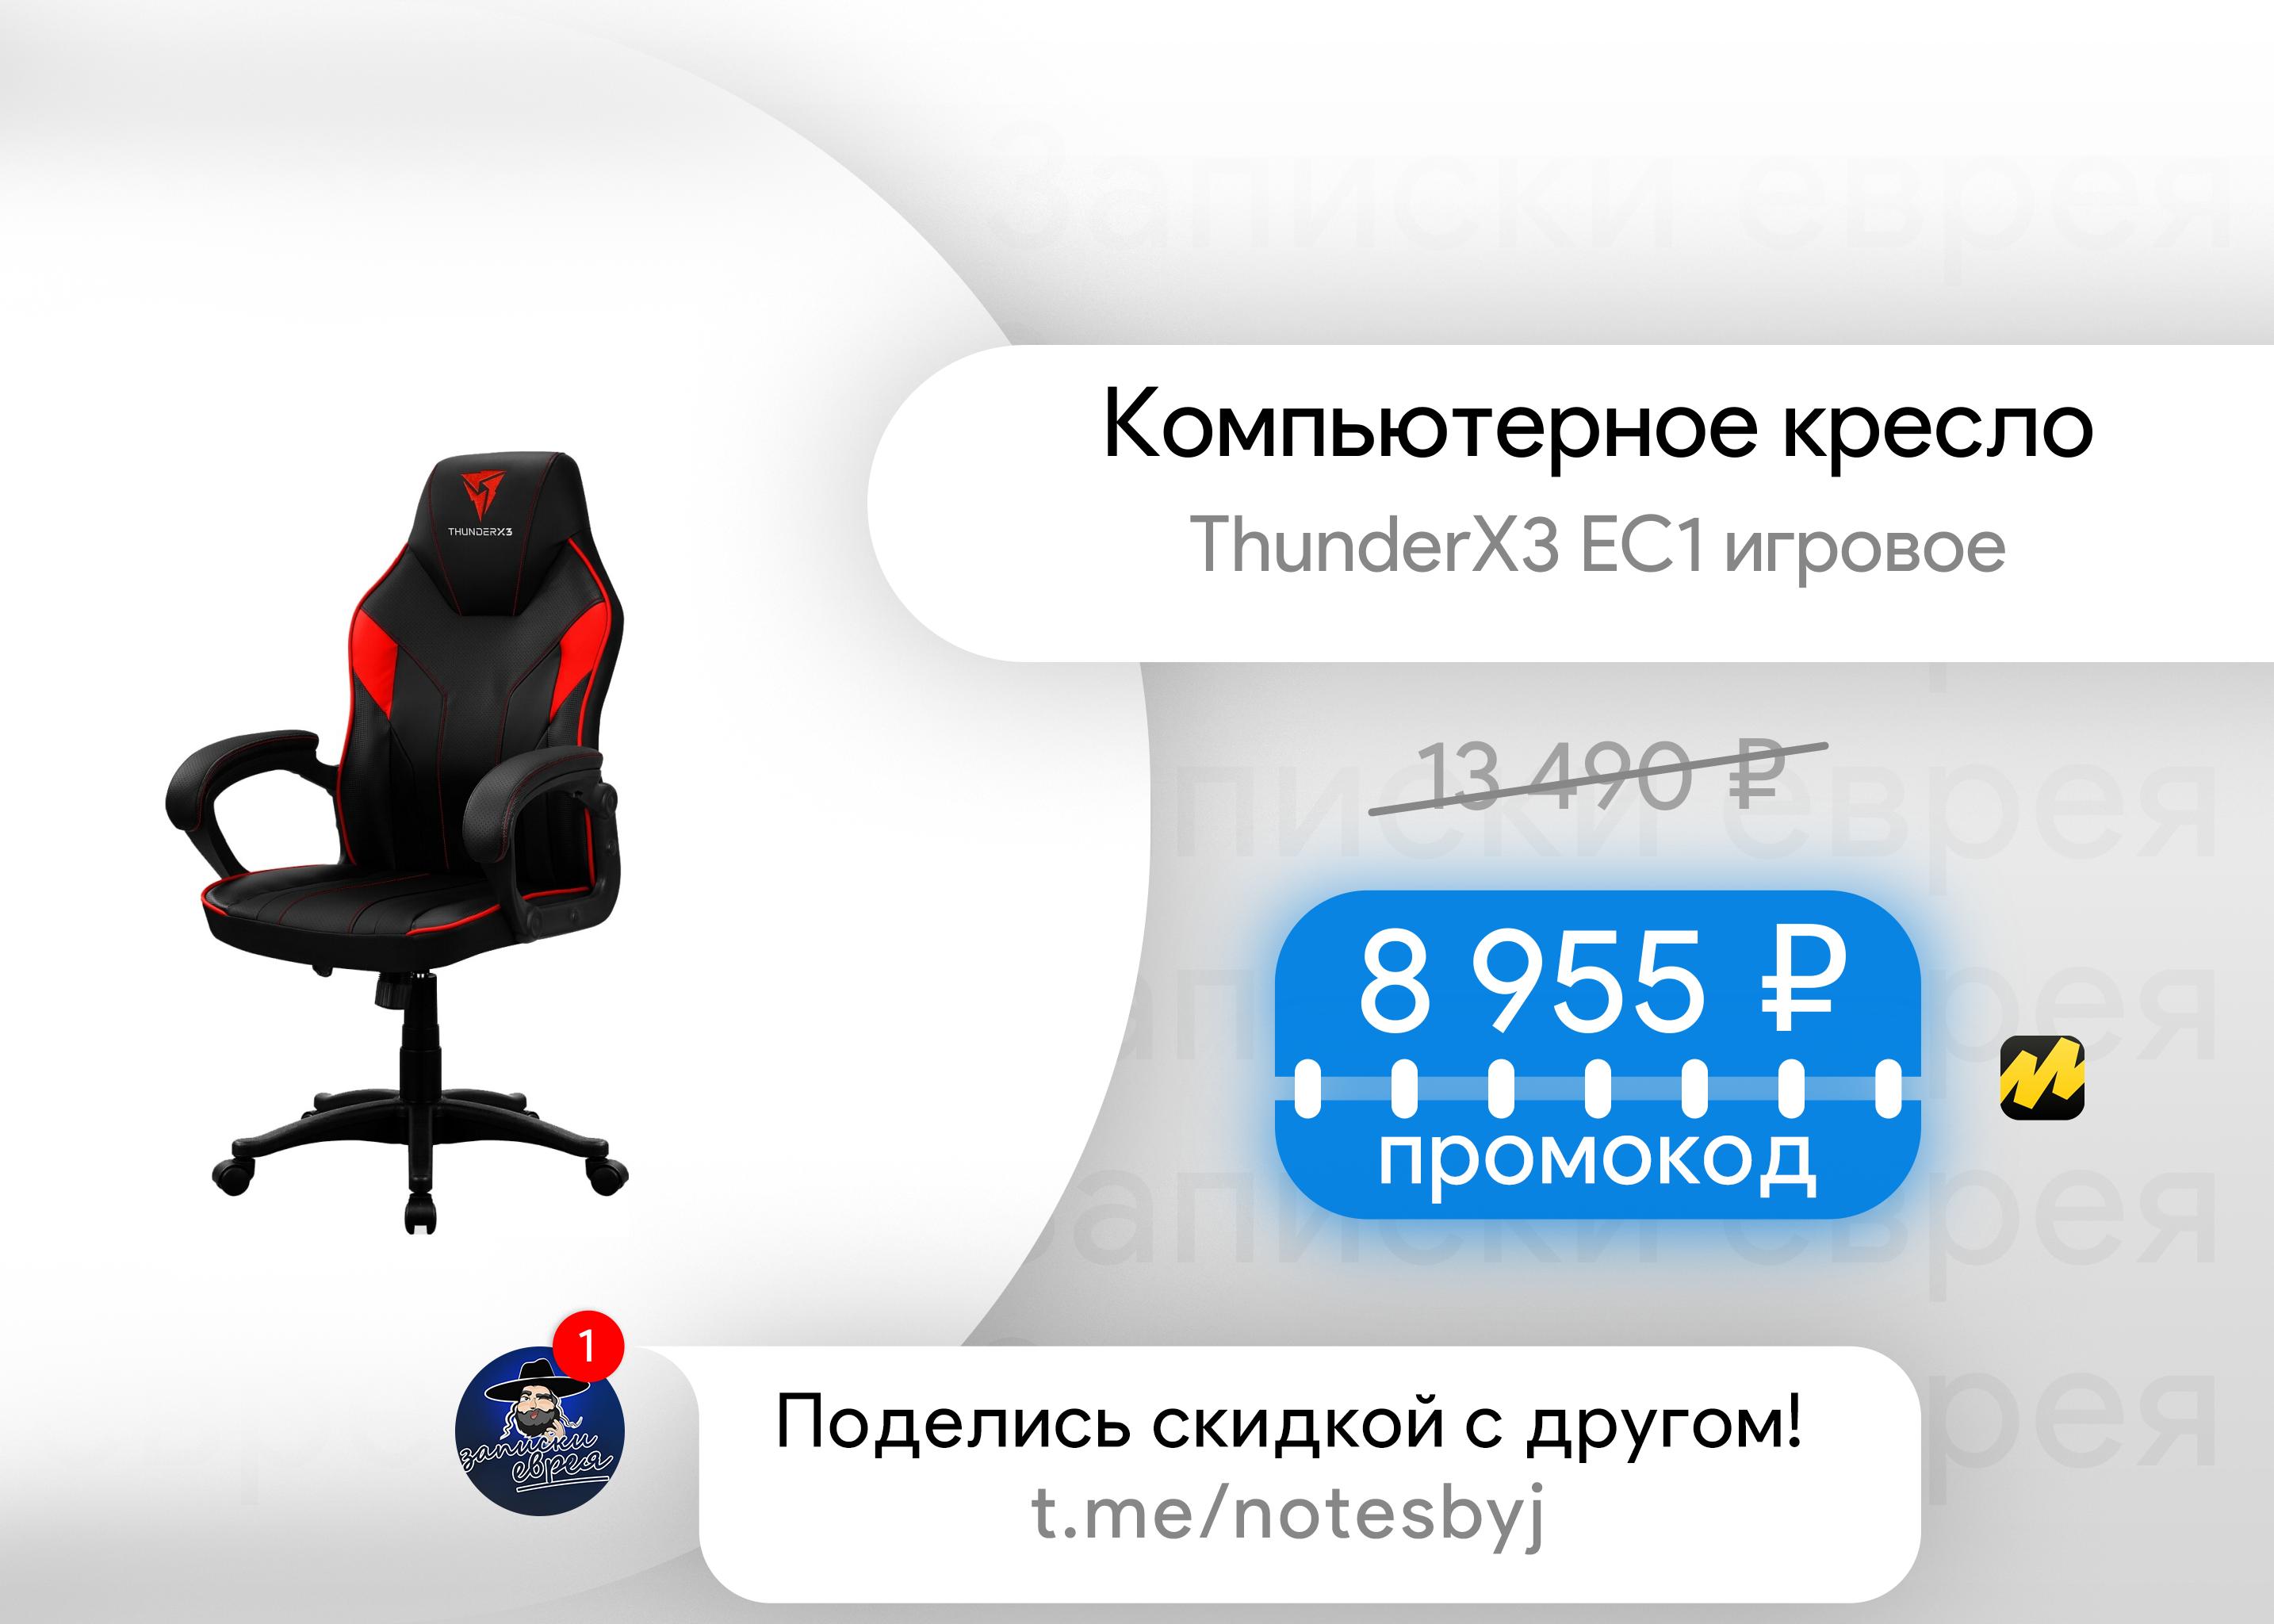 Игровое компьютерное кресло thunderx3 ec1